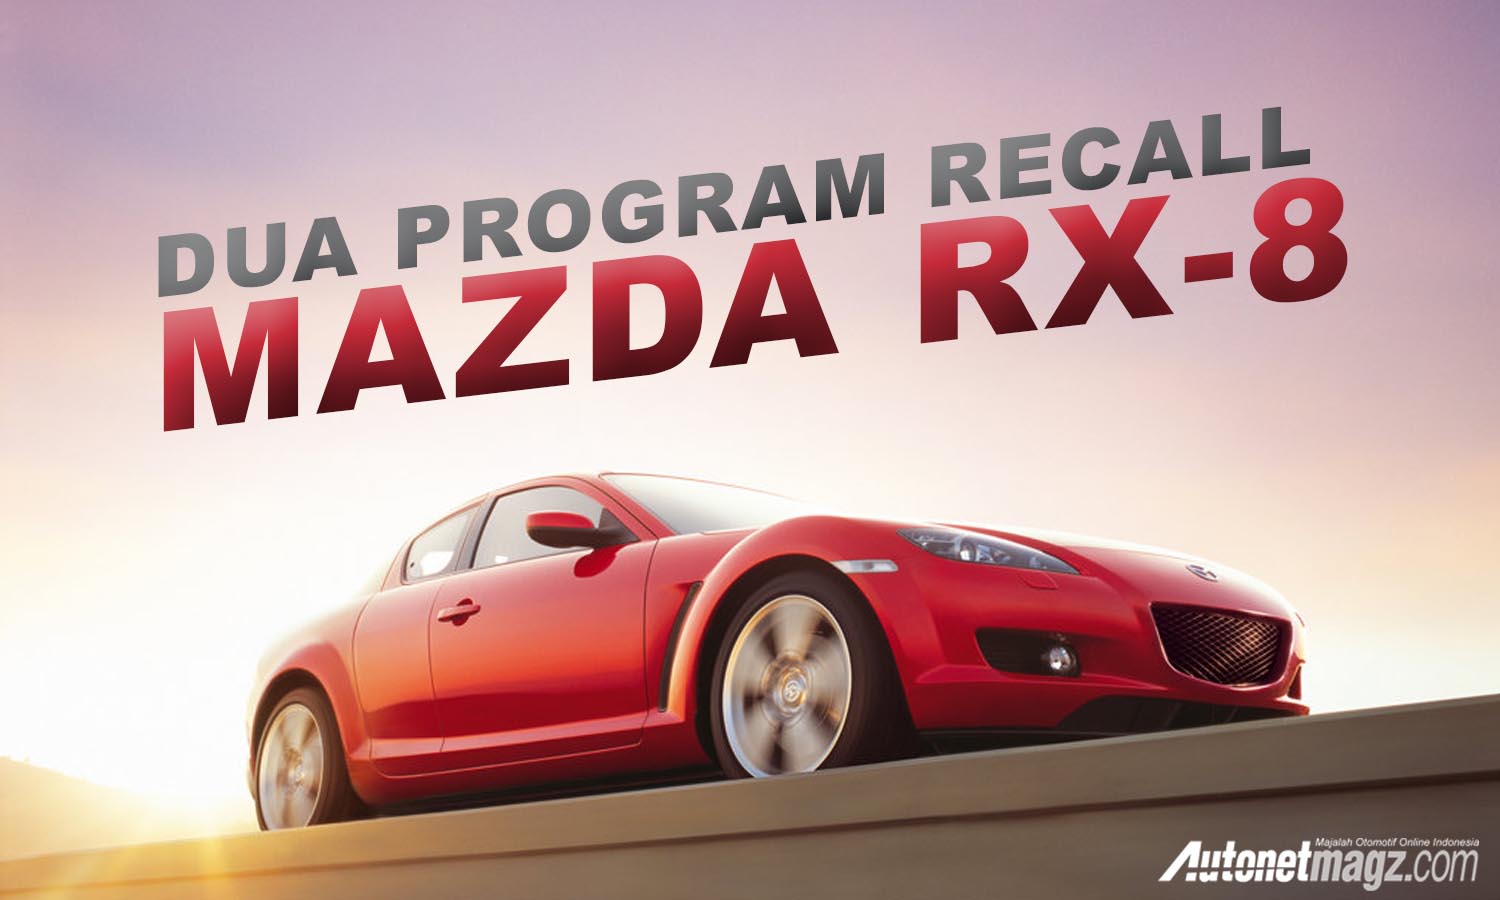 Berita, dua program recall mazda rx8: Seratus Ribu Unit Mazda RX-8 Terdaftar Dalam Dua Program Recall